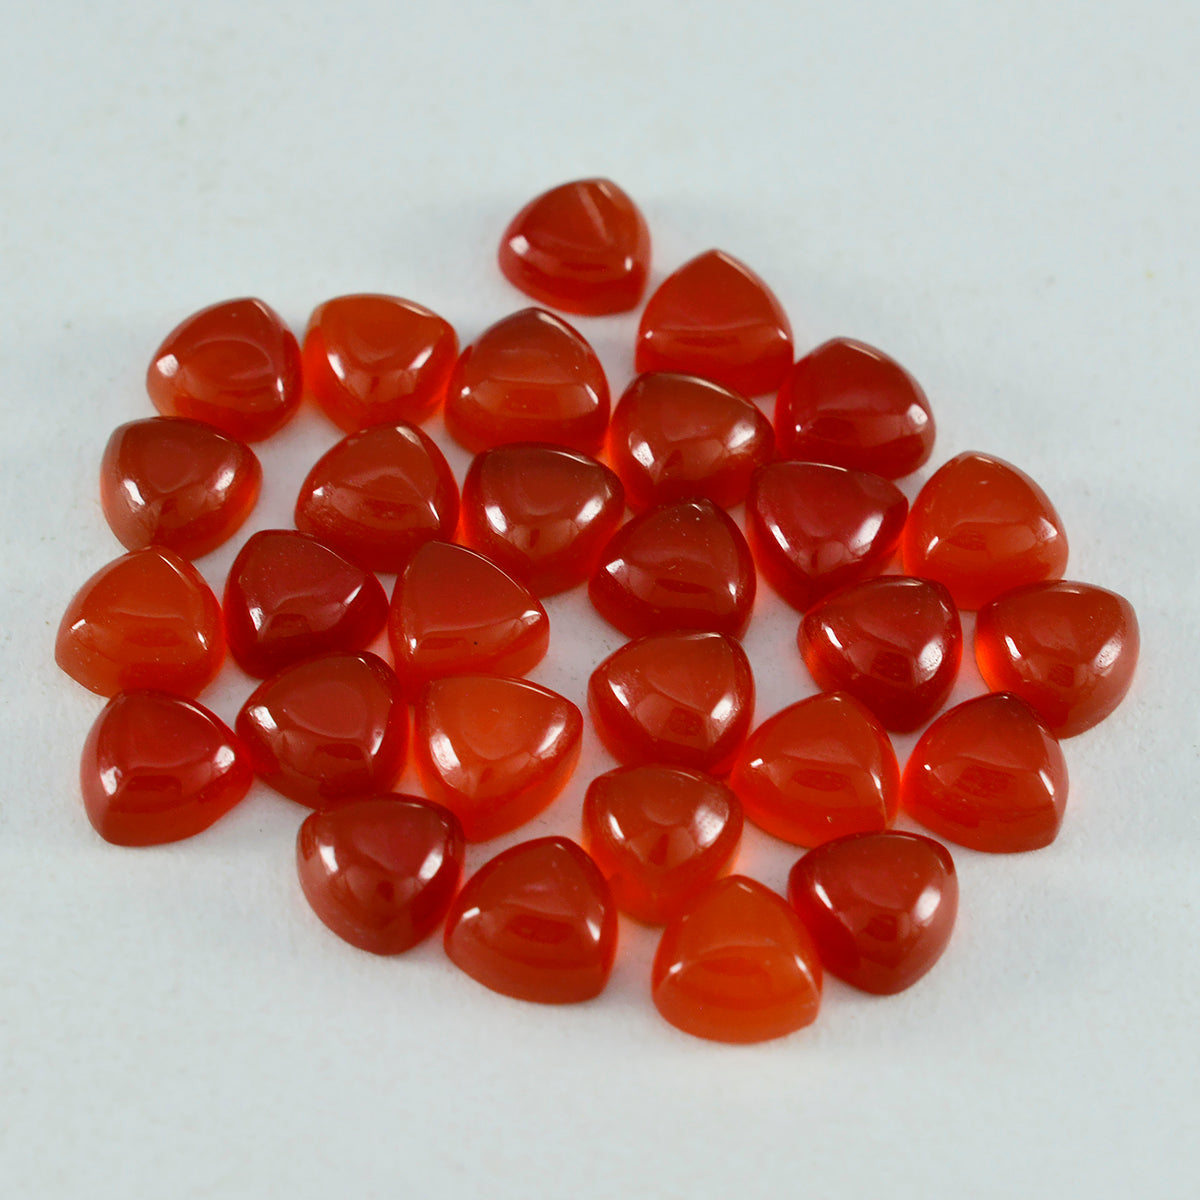 riyogems 1 cabujón de ónix rojo de 5x5 mm con forma de billón, piedra preciosa suelta de excelente calidad